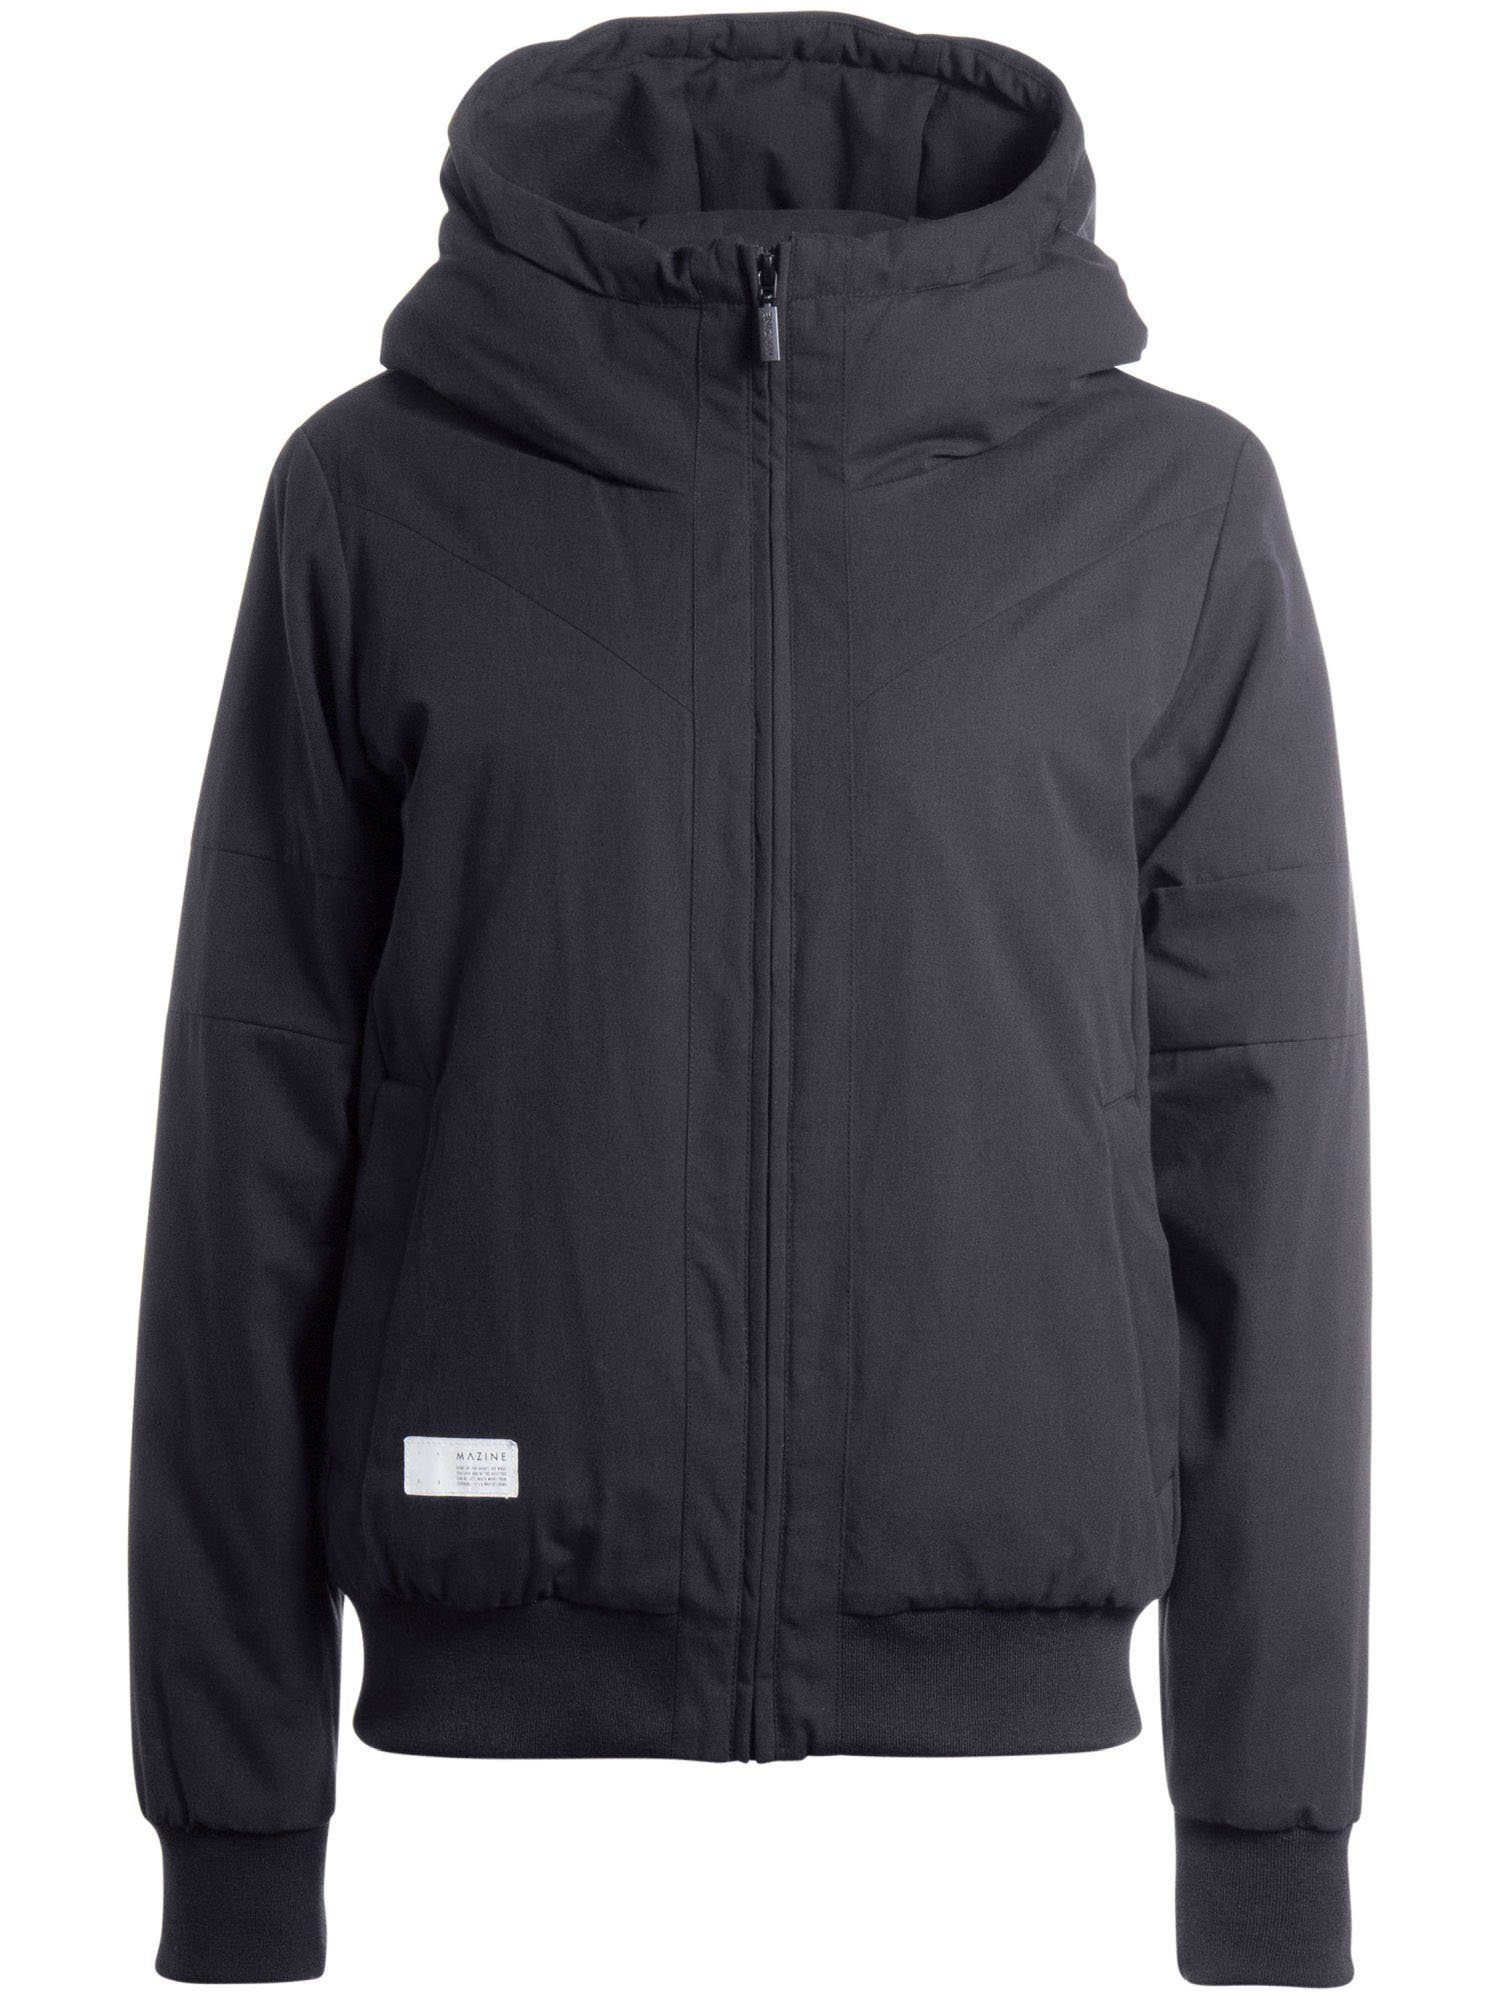 MAZINE Winterjacke »Chelsey II Jacket« kaufen | OTTO